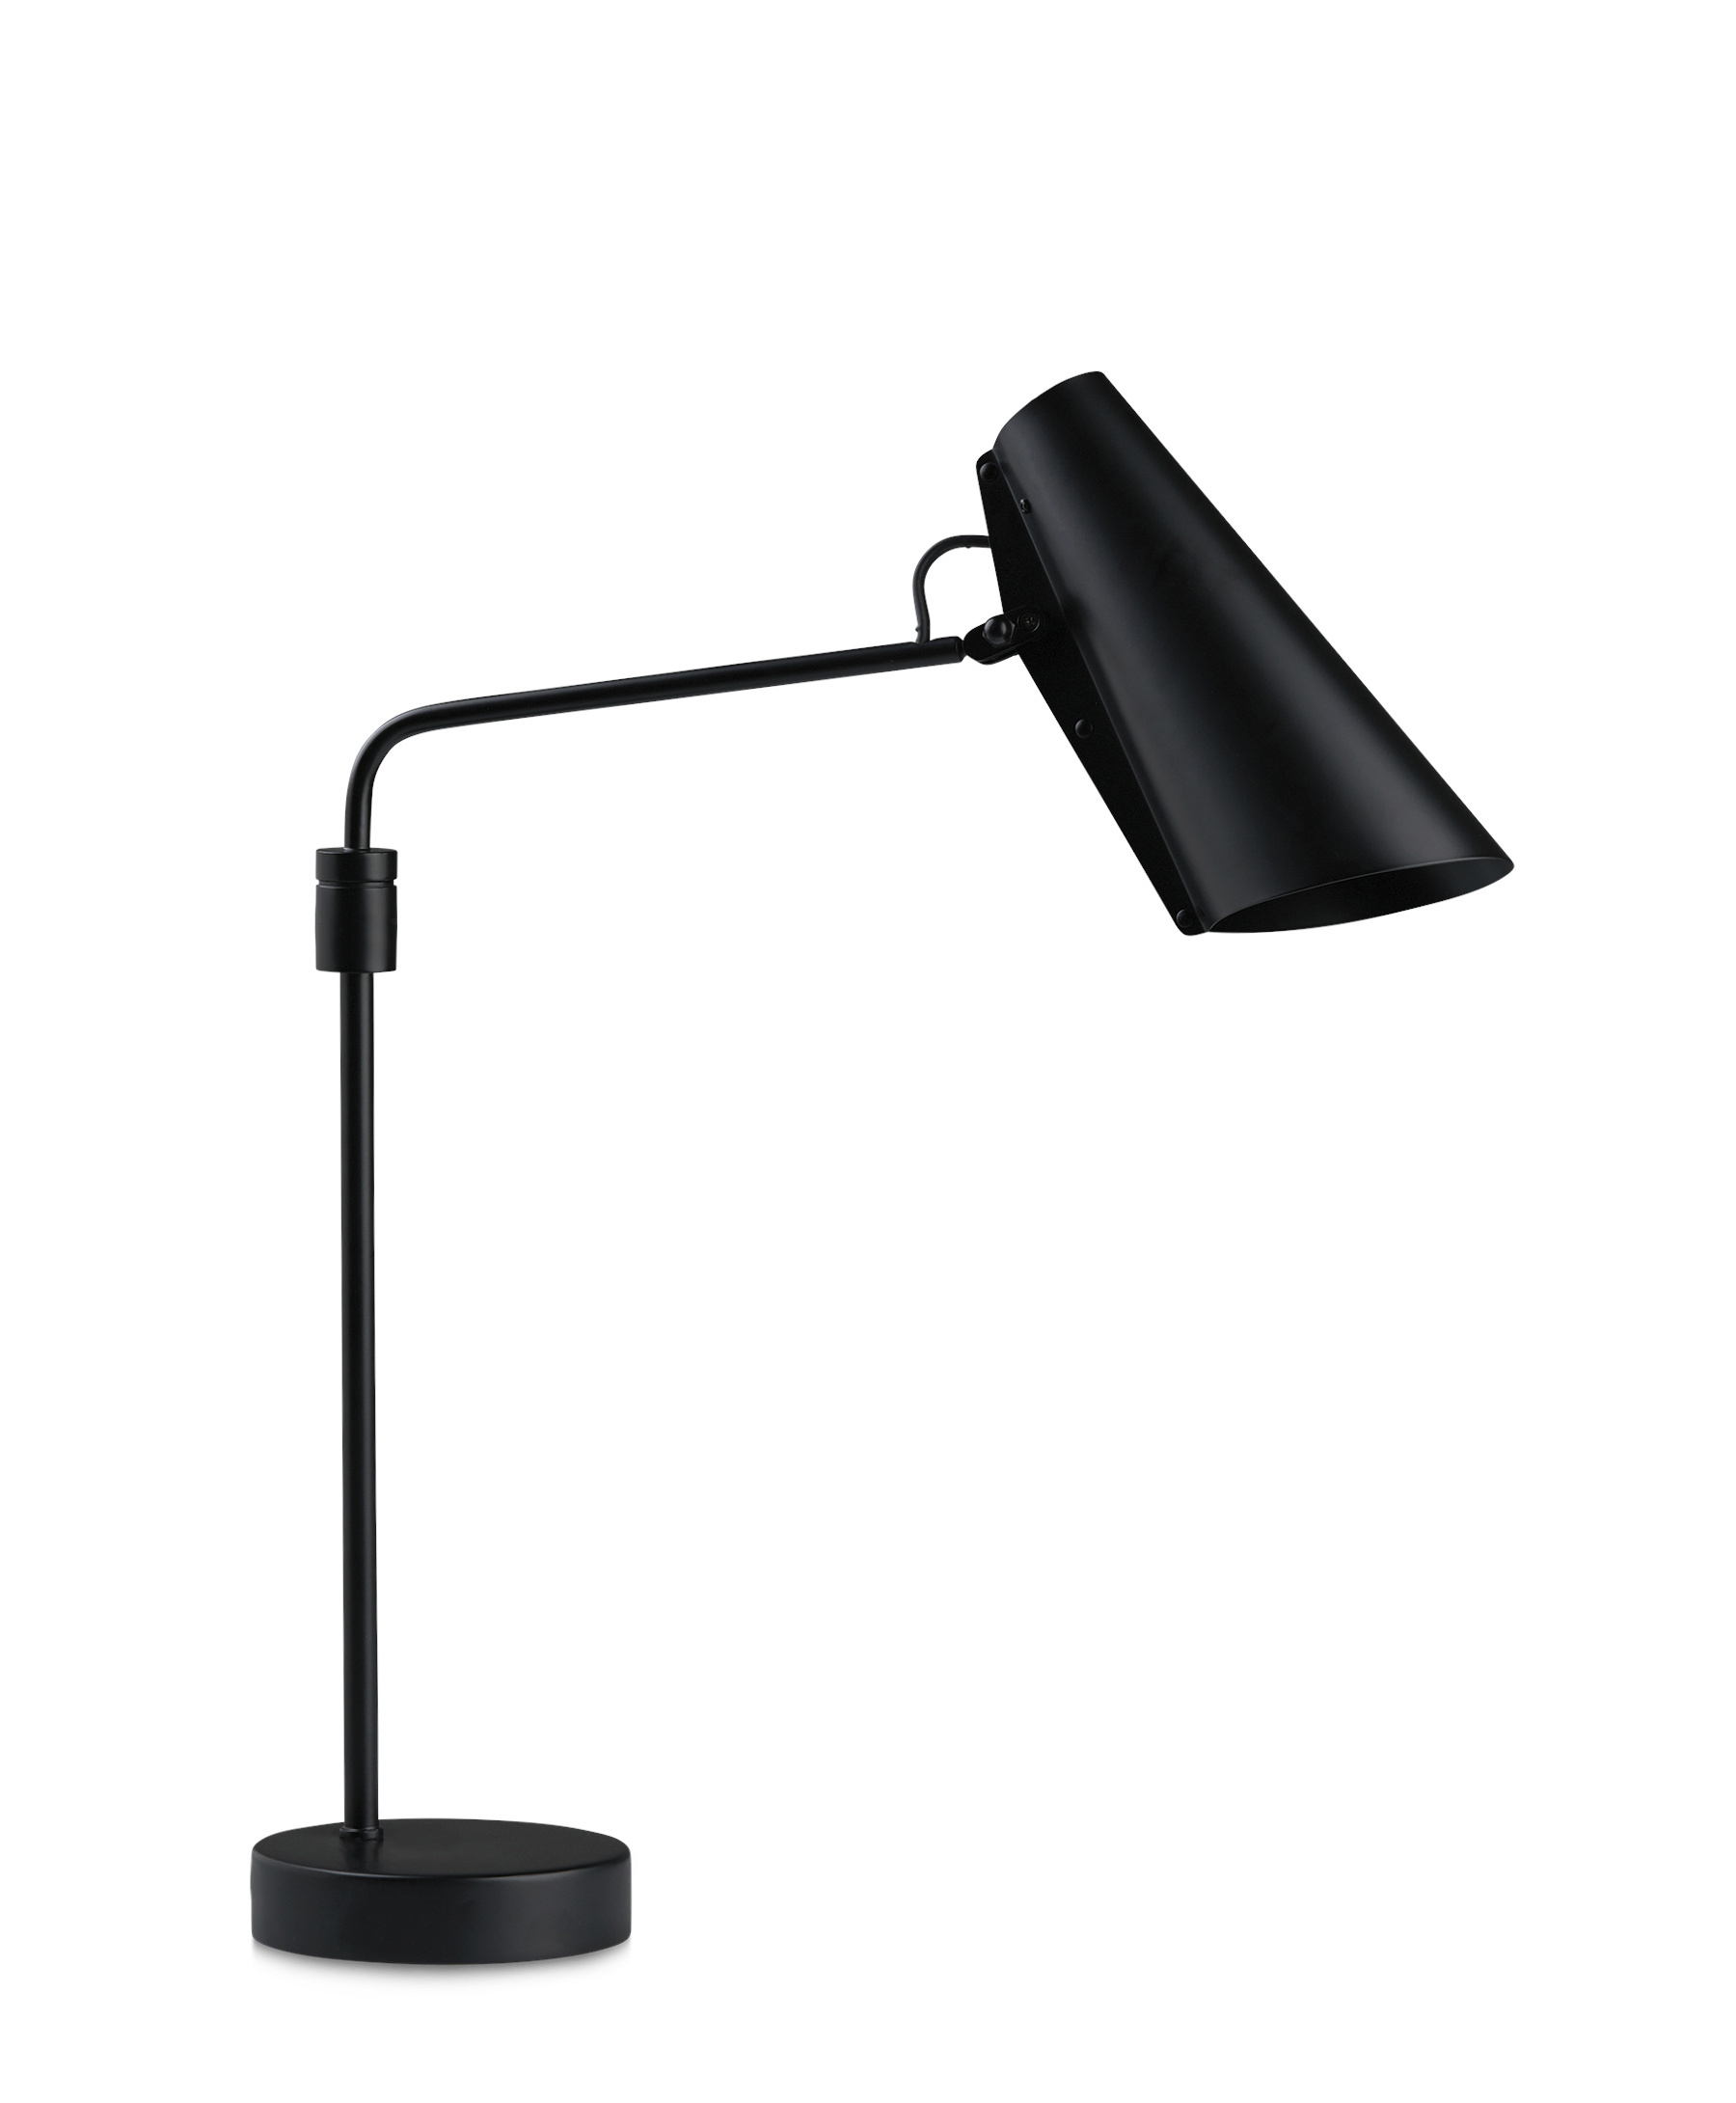 & Tischlampen Smartambiente Design Tischleuchten | kaufen online